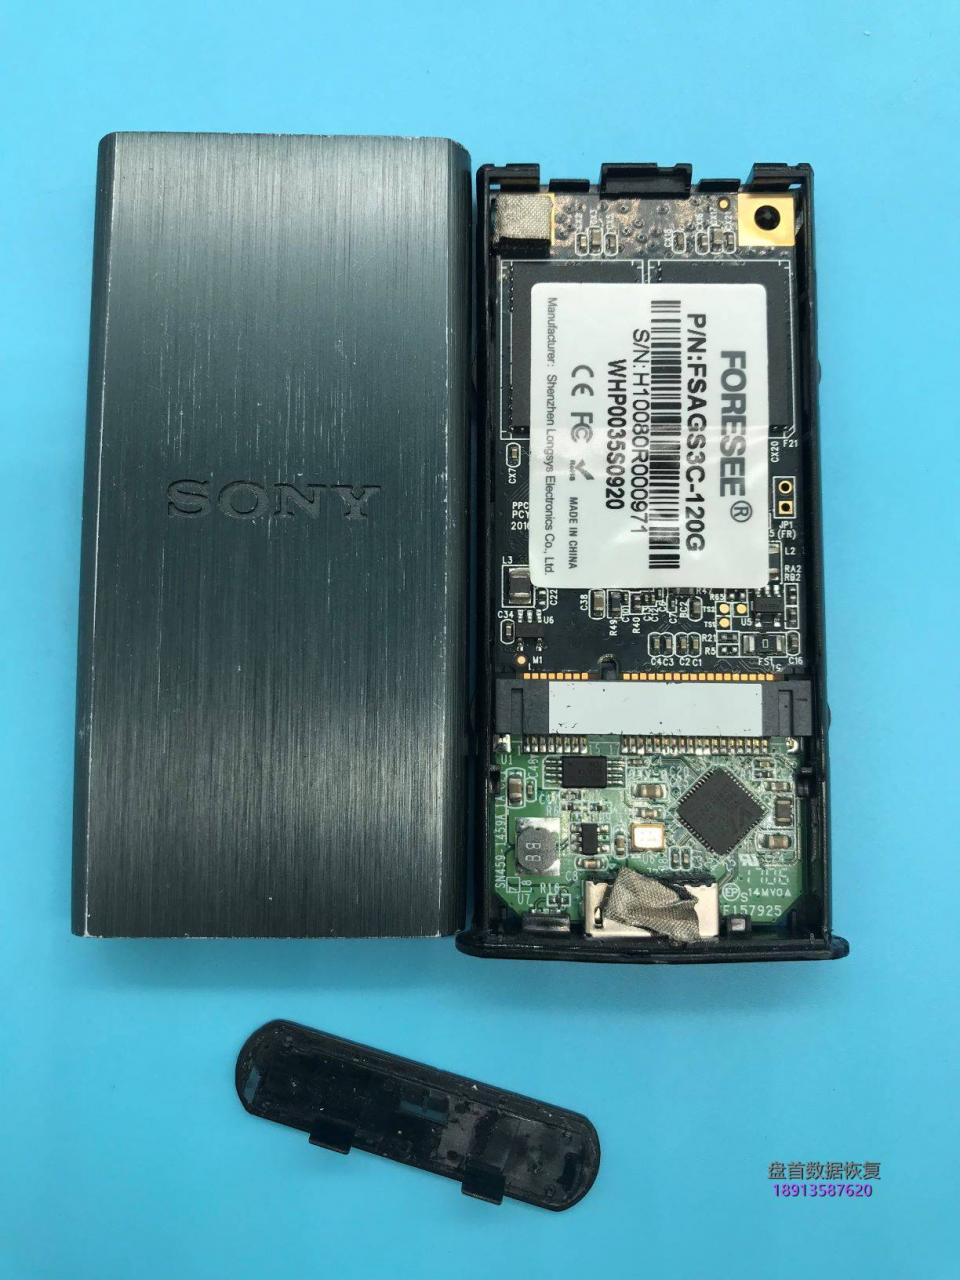 完美修复88NV1120主控固态硬盘因电源故障引起的SSD电容短路问题修复成功